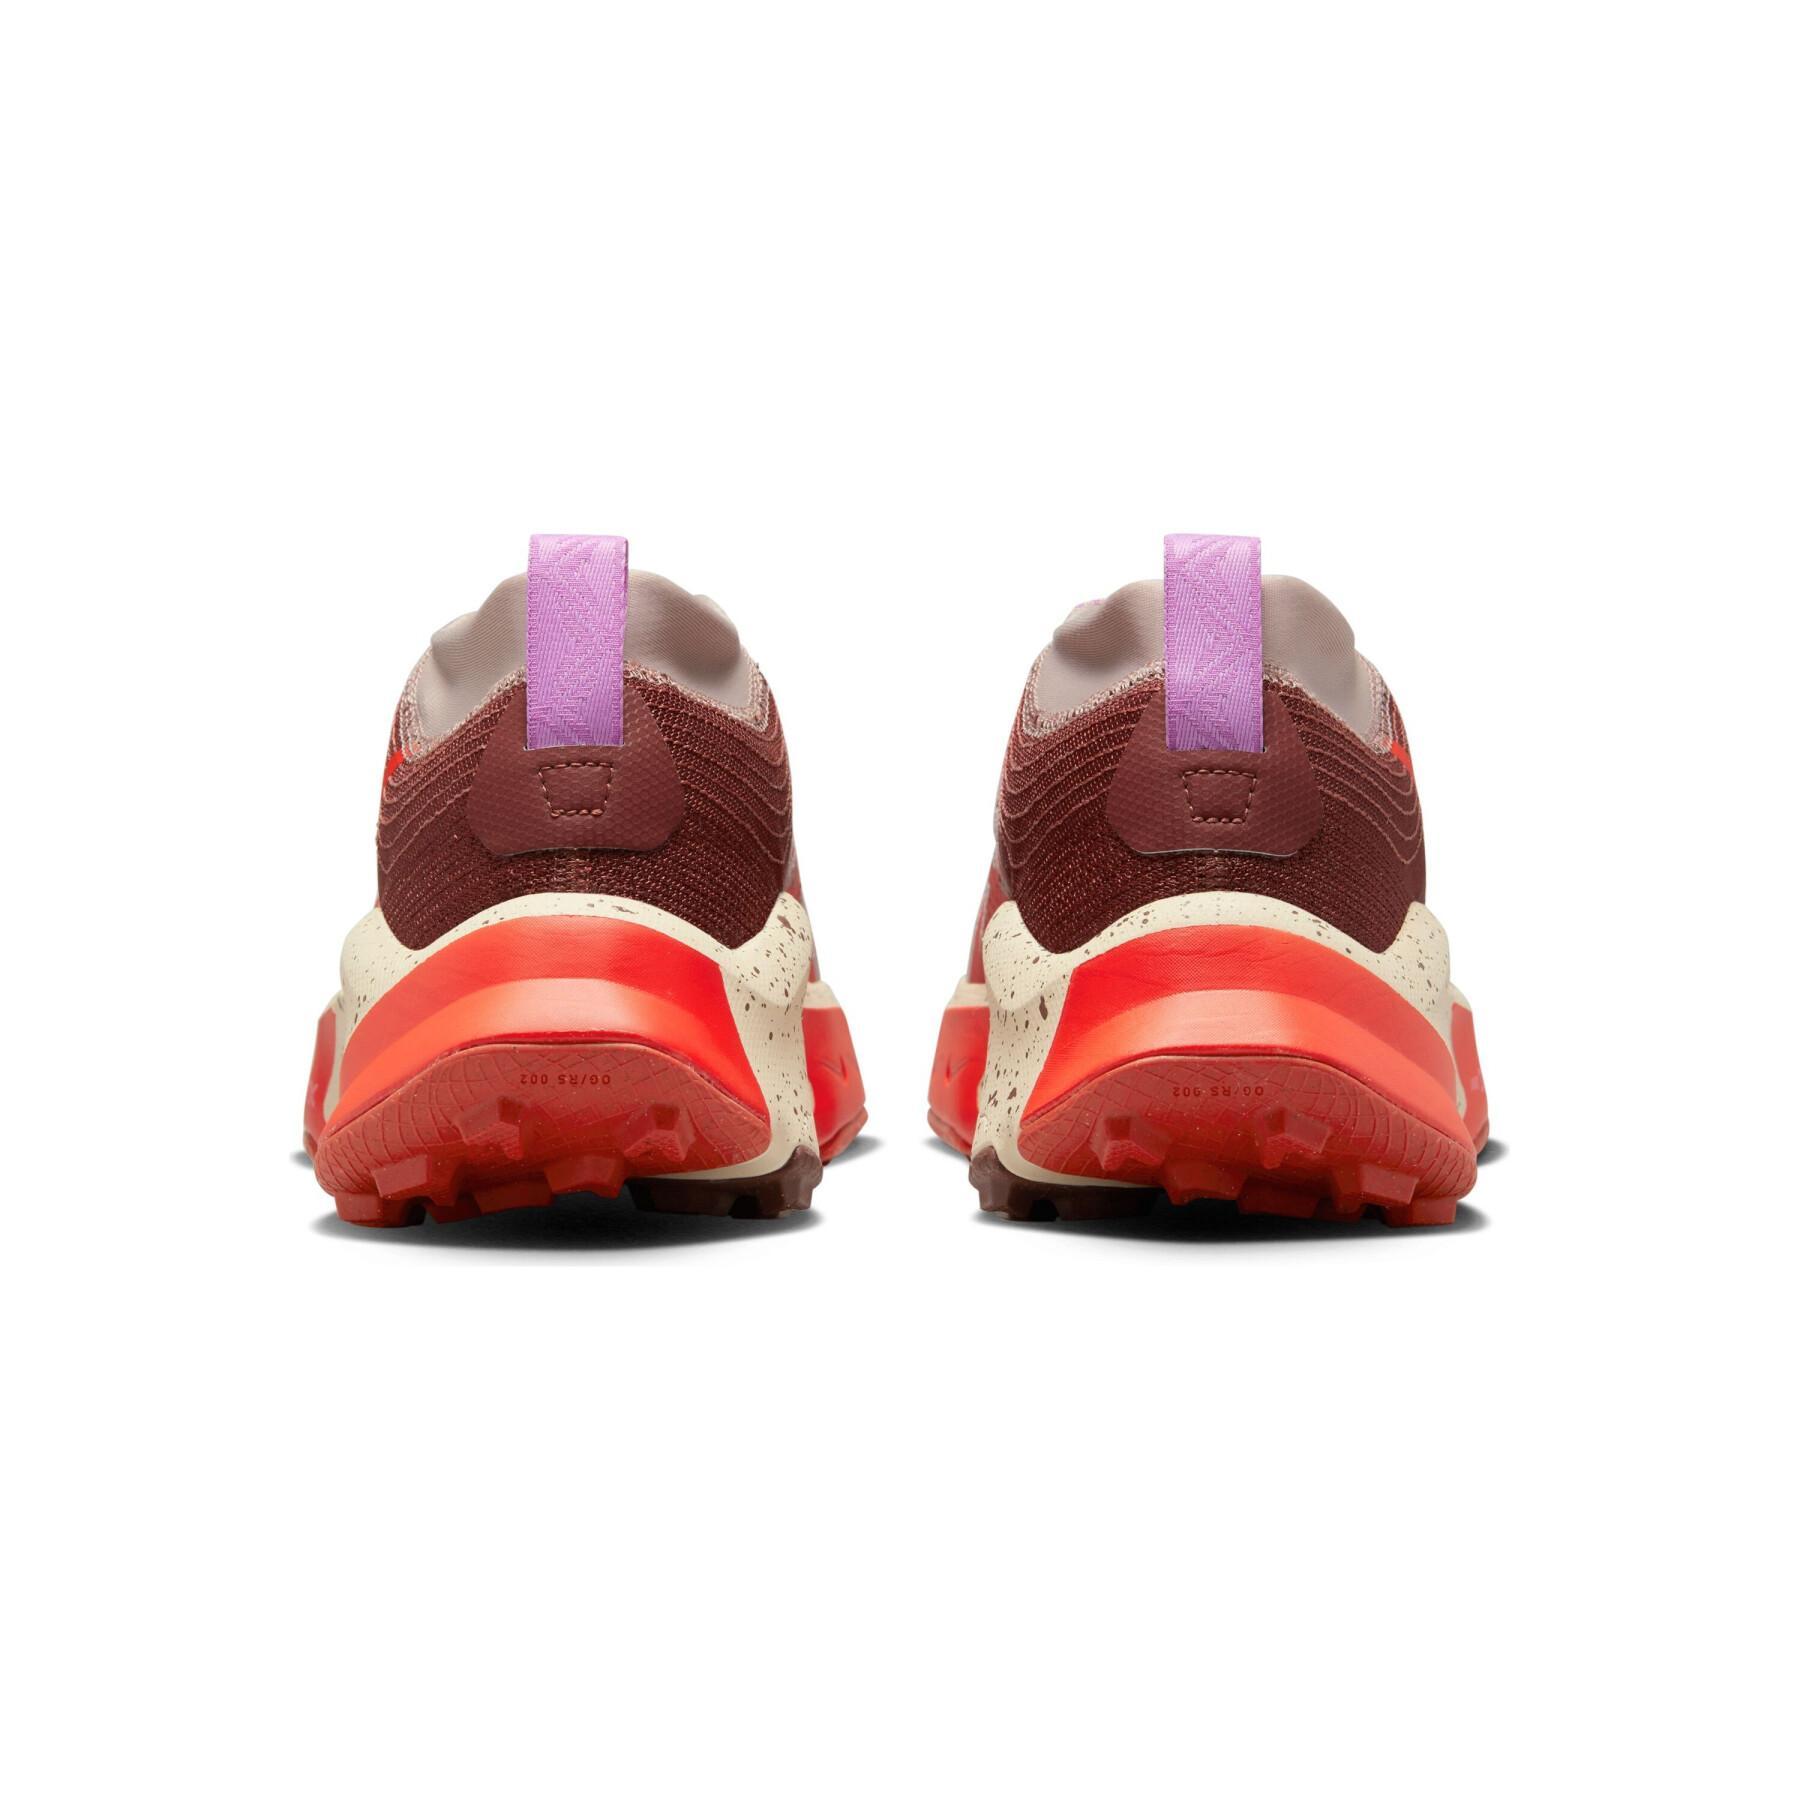 Schoenen van Running Nike ZoomX Zegama